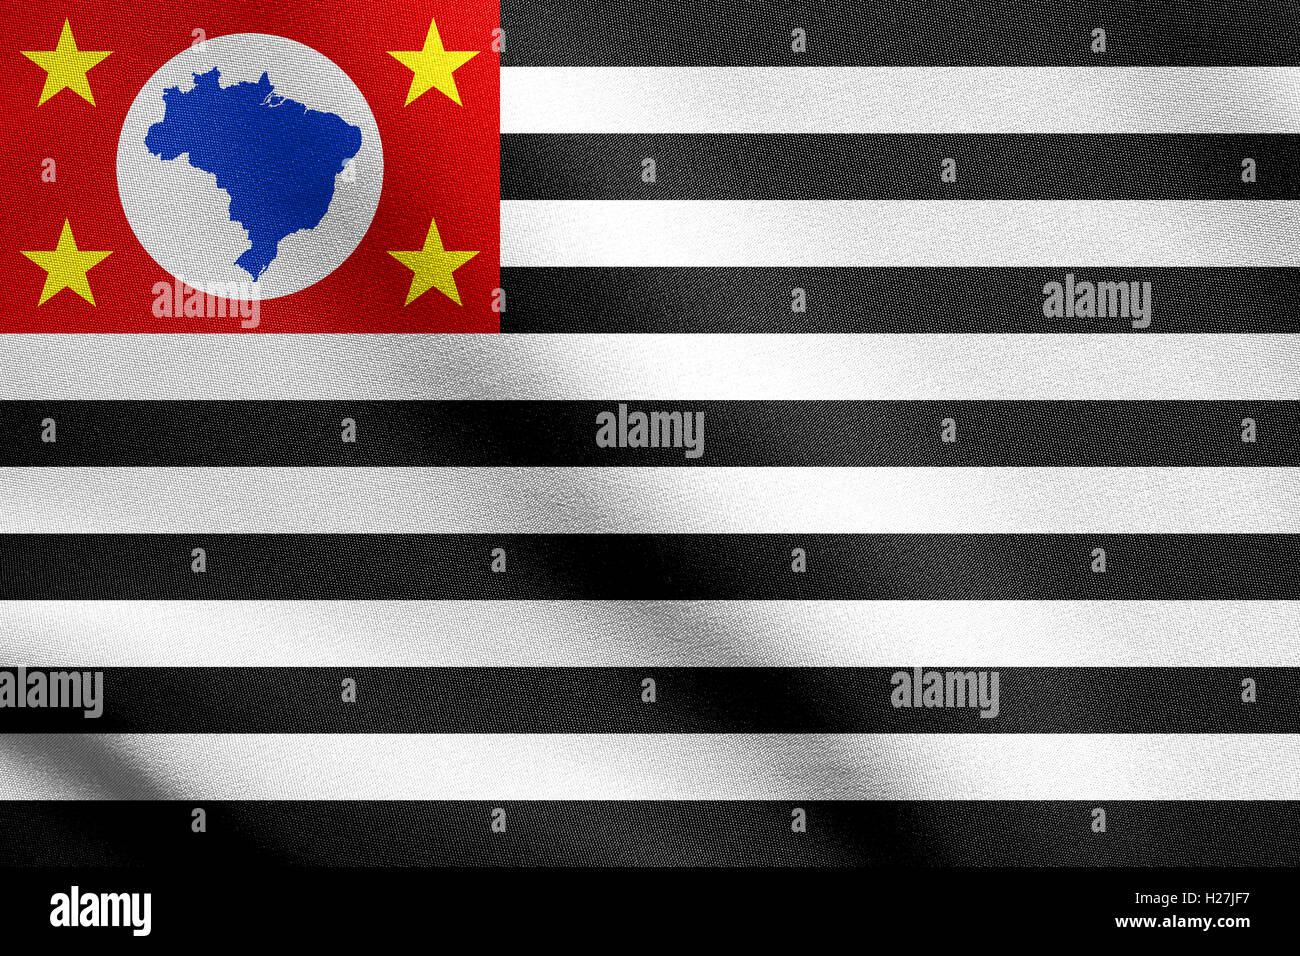 L'état brésilien de São Paulo, symbole de drapeau officiel. Brasil banner, arrière-plan. République fédérative du Brésil élément patriotique. Banque D'Images